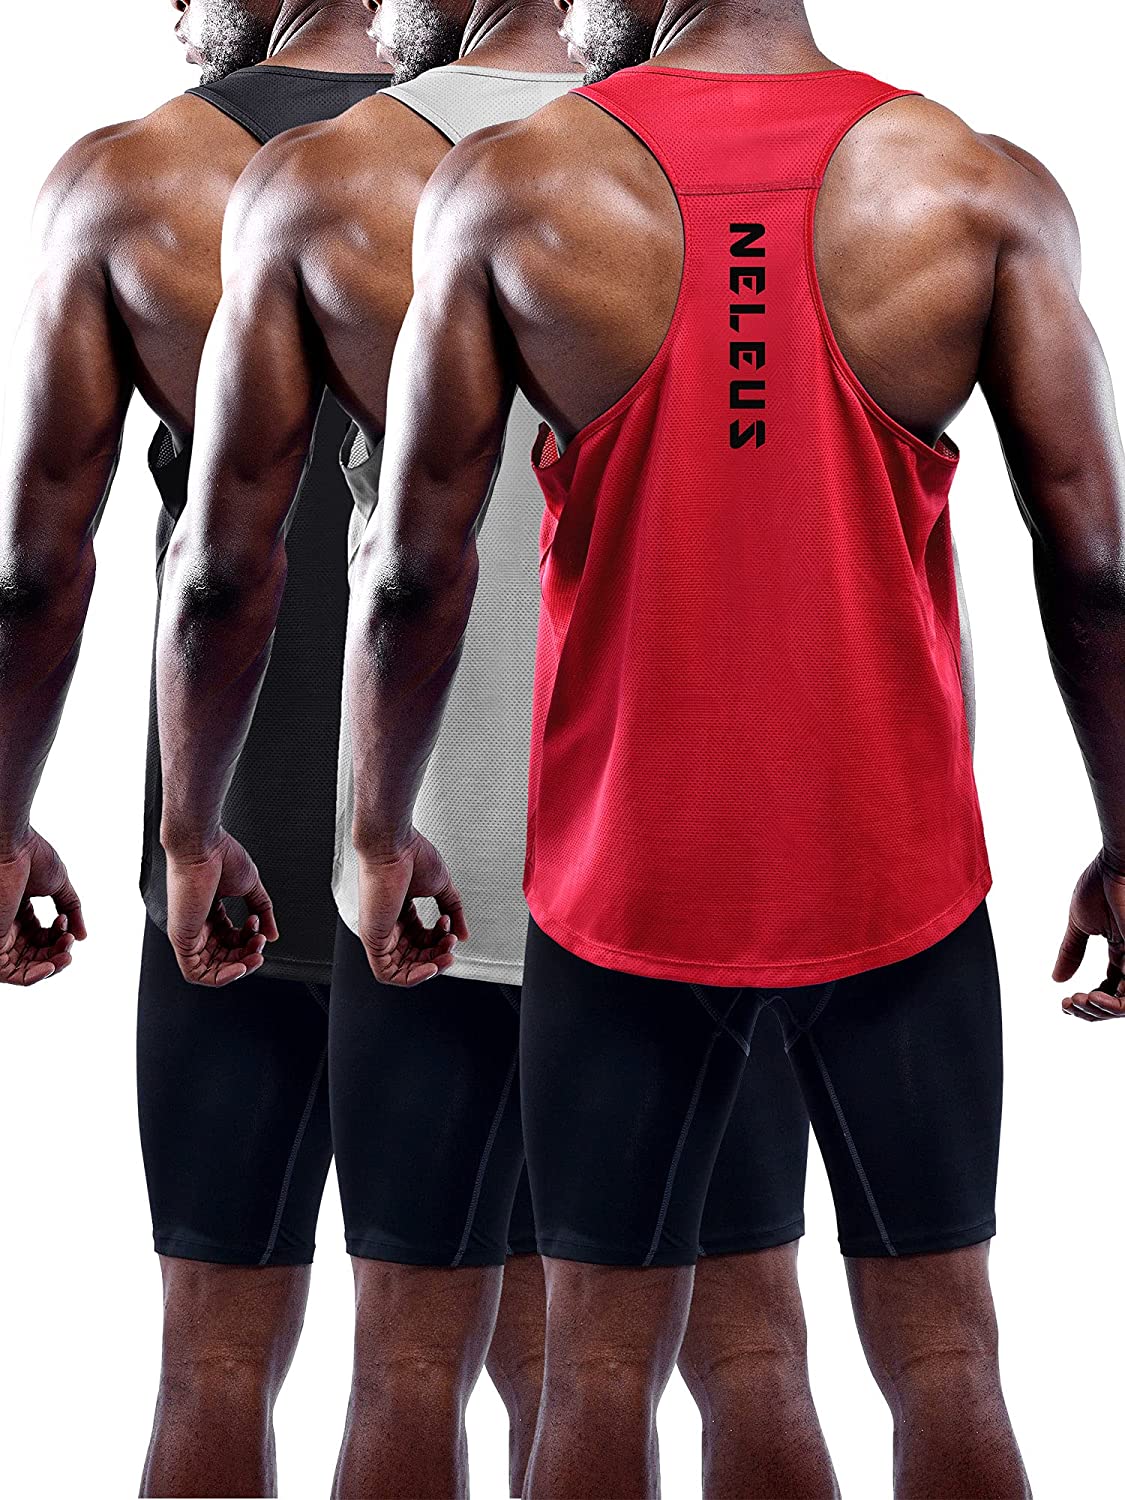 Neleus Men's Workout Tank Tops 3 Pack Sleeveless Running Shirts